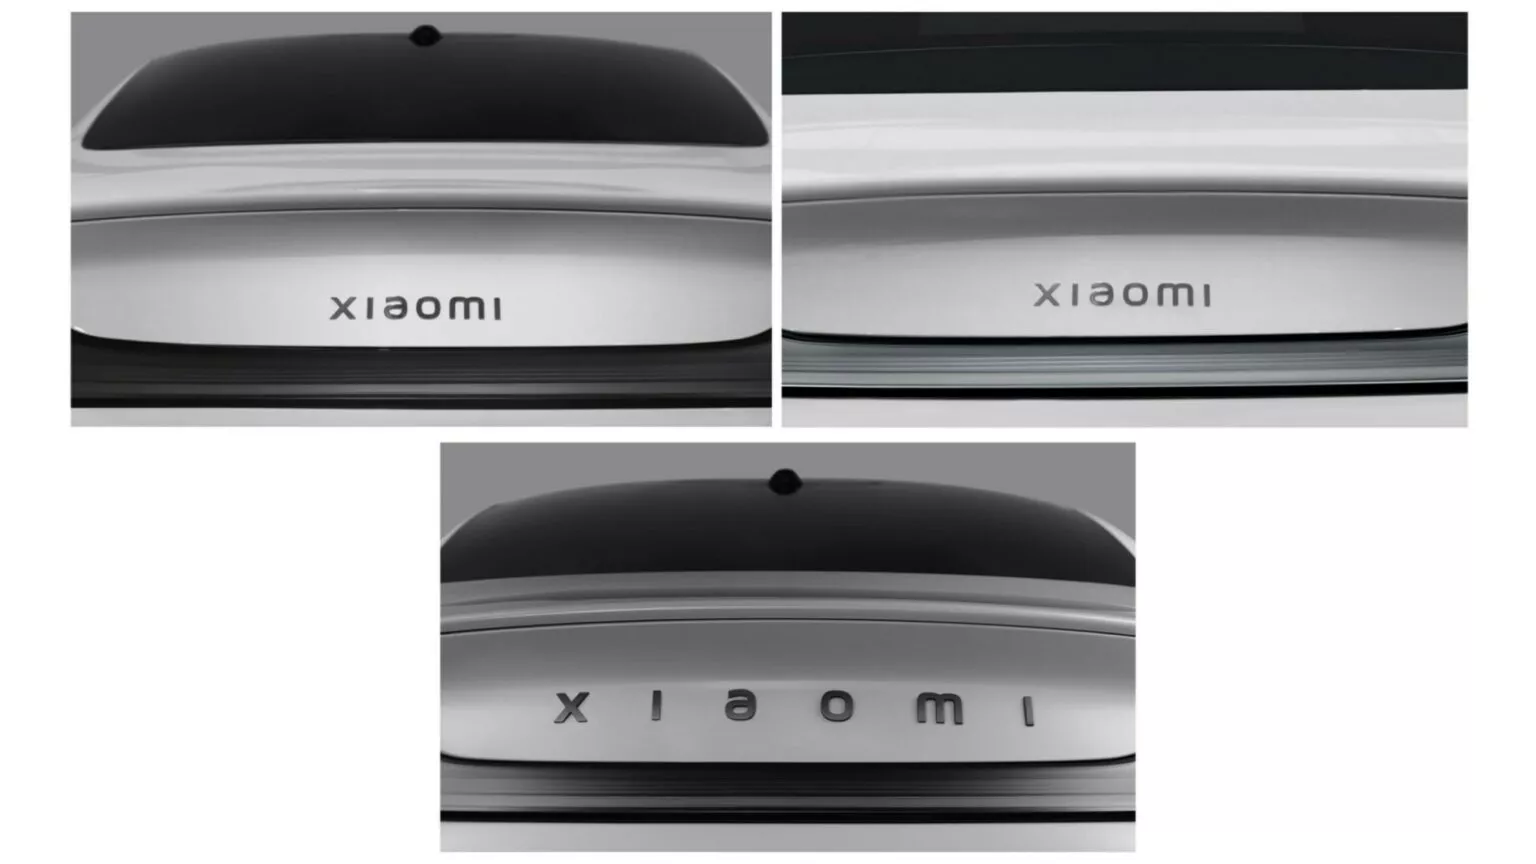 Xiaomi tinh chỉnh thiết kế của SU7 sau khi lắng nghe phản hồi của khách hàng 2024-xiaomi-su7-9-1536x864.webp